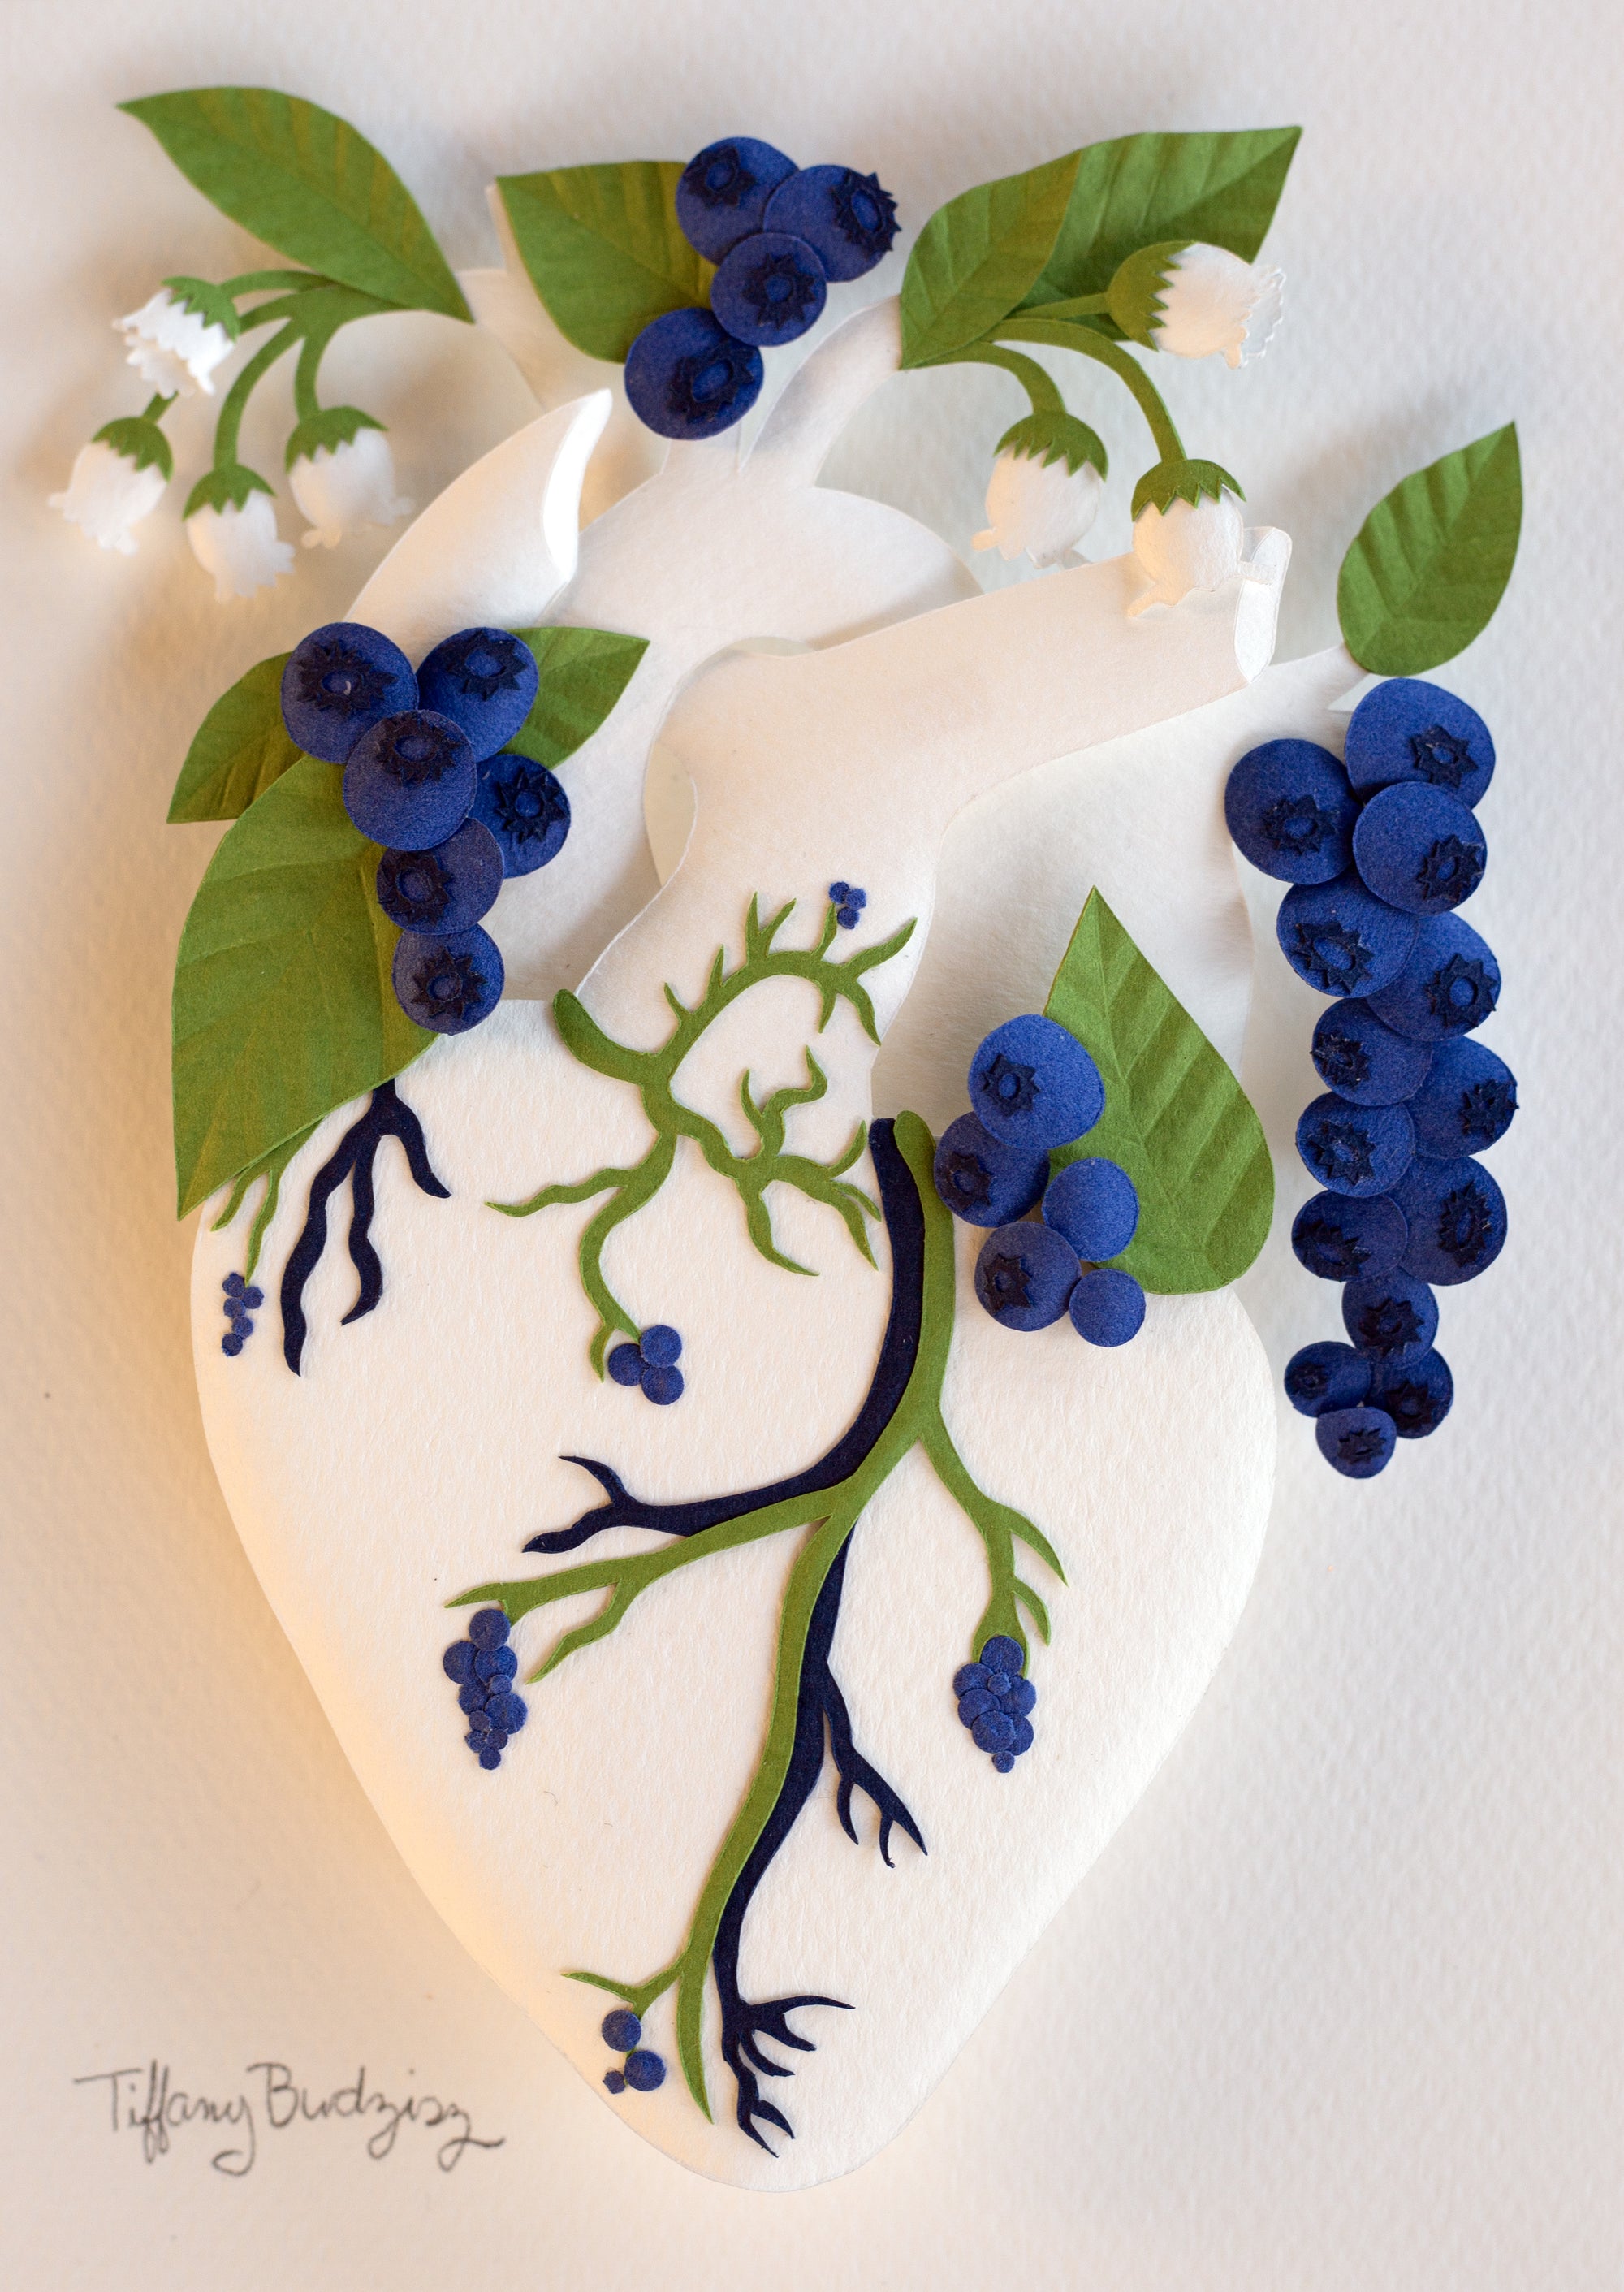 Healing Heart: Blueberries